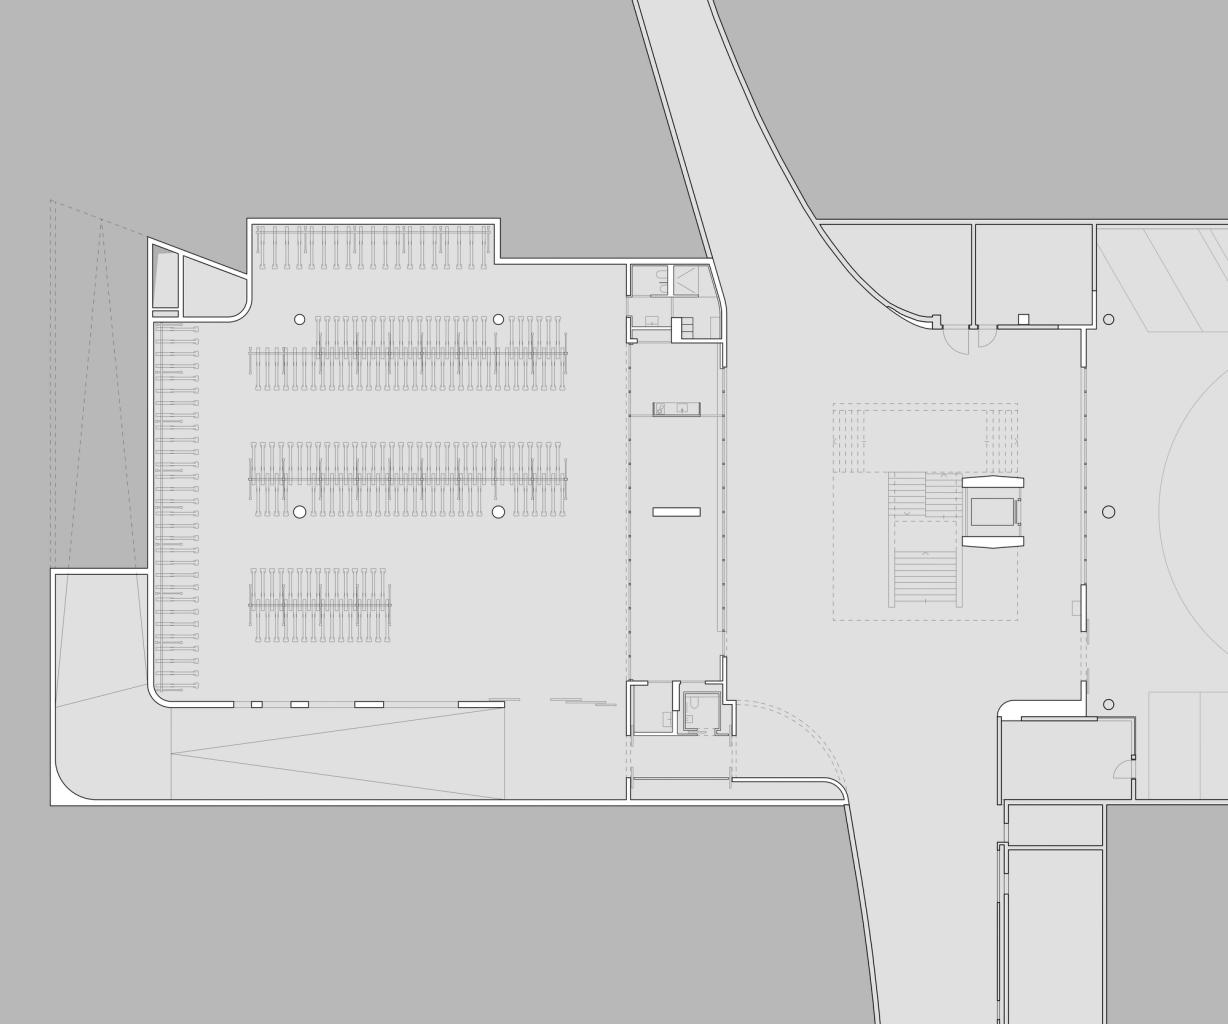 Grundriss 1. Untergeschoss mit Autoeinstellhalle und Veloparking im Bahnhof Zofingen